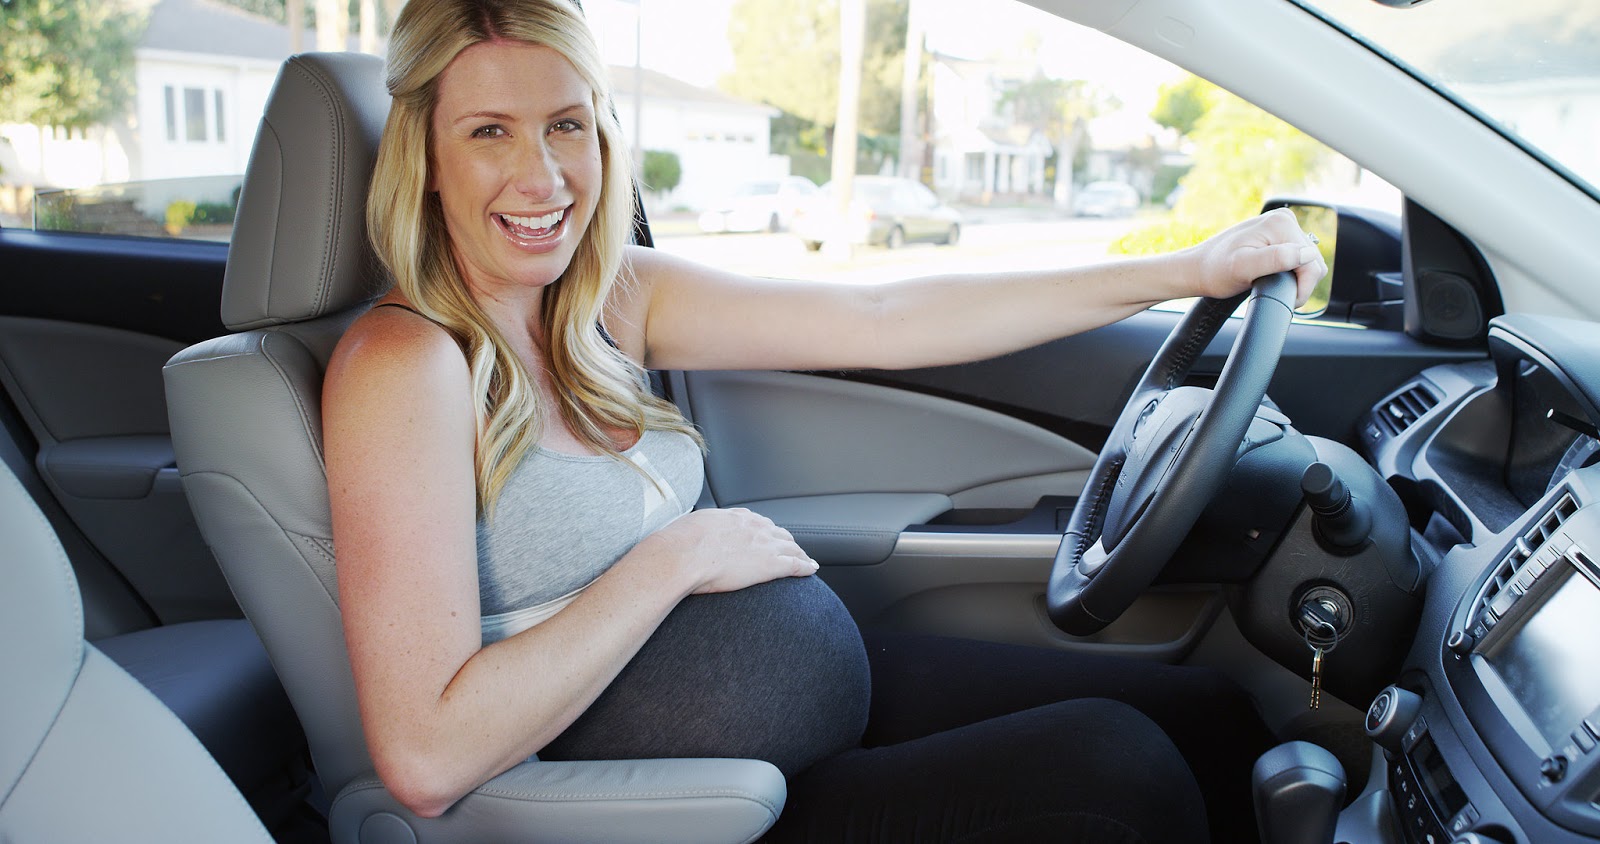 25CE259525CE25B325CE25BA25CF258525CE25BC25CE25BF25CF258325CF258D25CE25BD25CE25B72B25262B25CE259F25CE25B425CE25AE25CE25B325CE25B725CF258325CE25B7 Εγκυμοσύνη & Οδήγηση: Όλα όσα πρέπει να γνωρίζετε